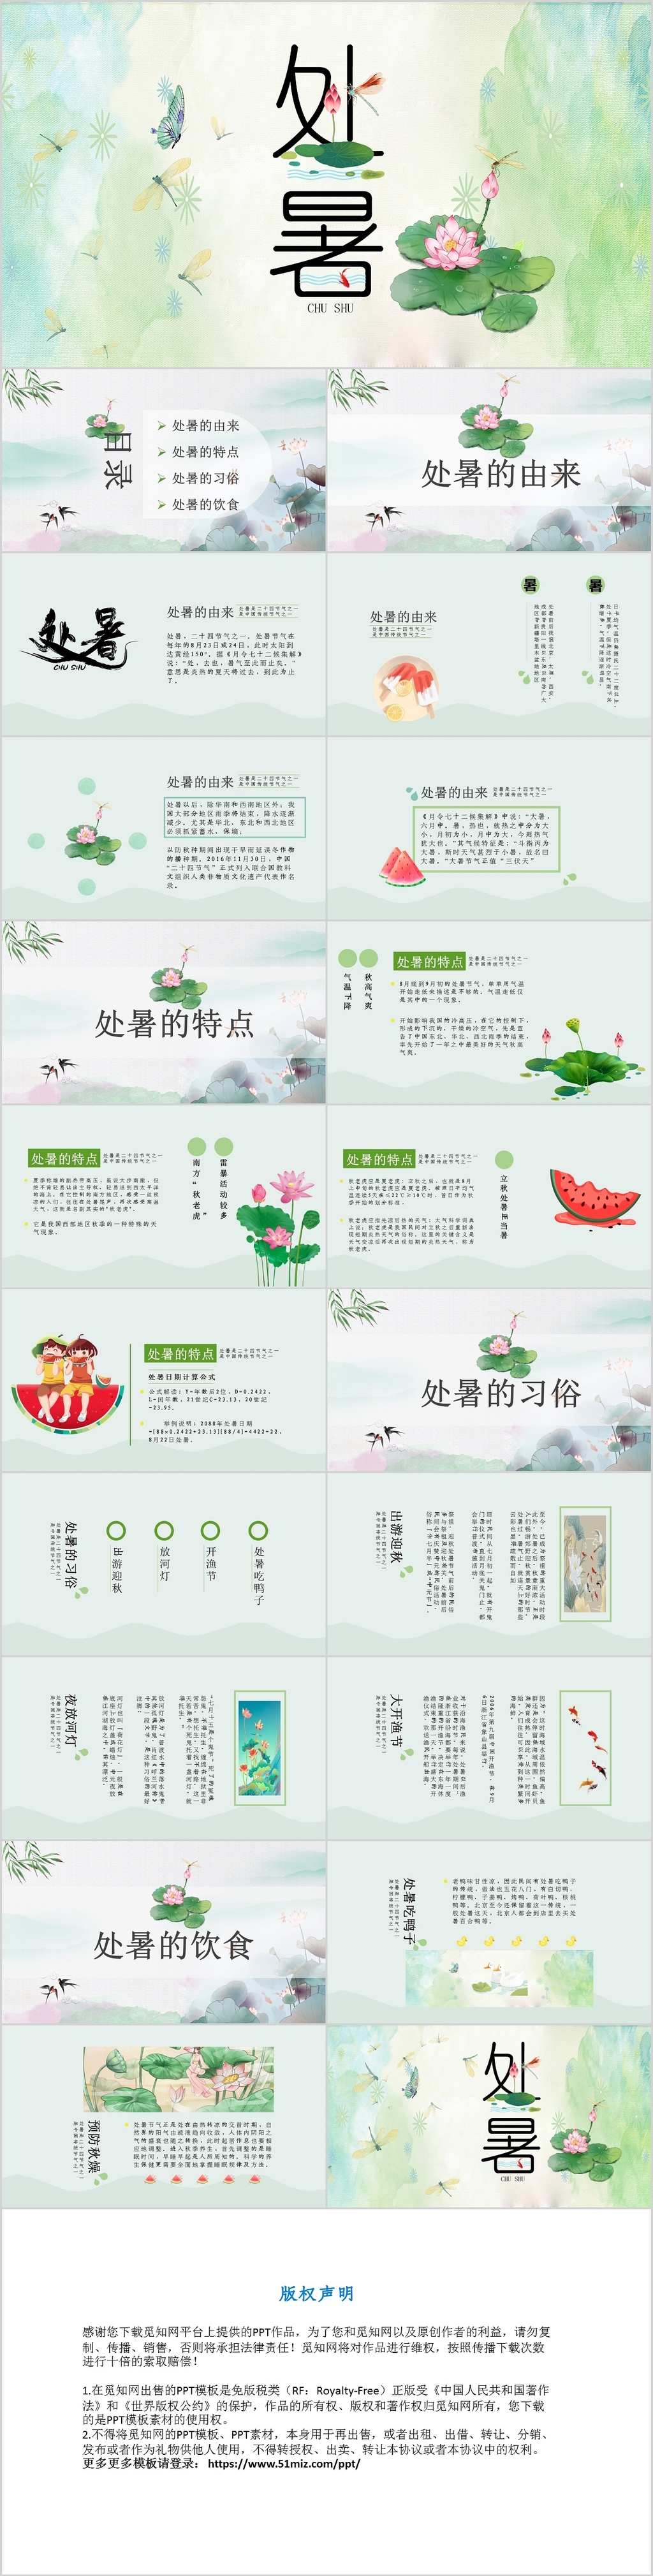 绿色小清新传统节日二十四节气之处暑节日介绍PPT模板